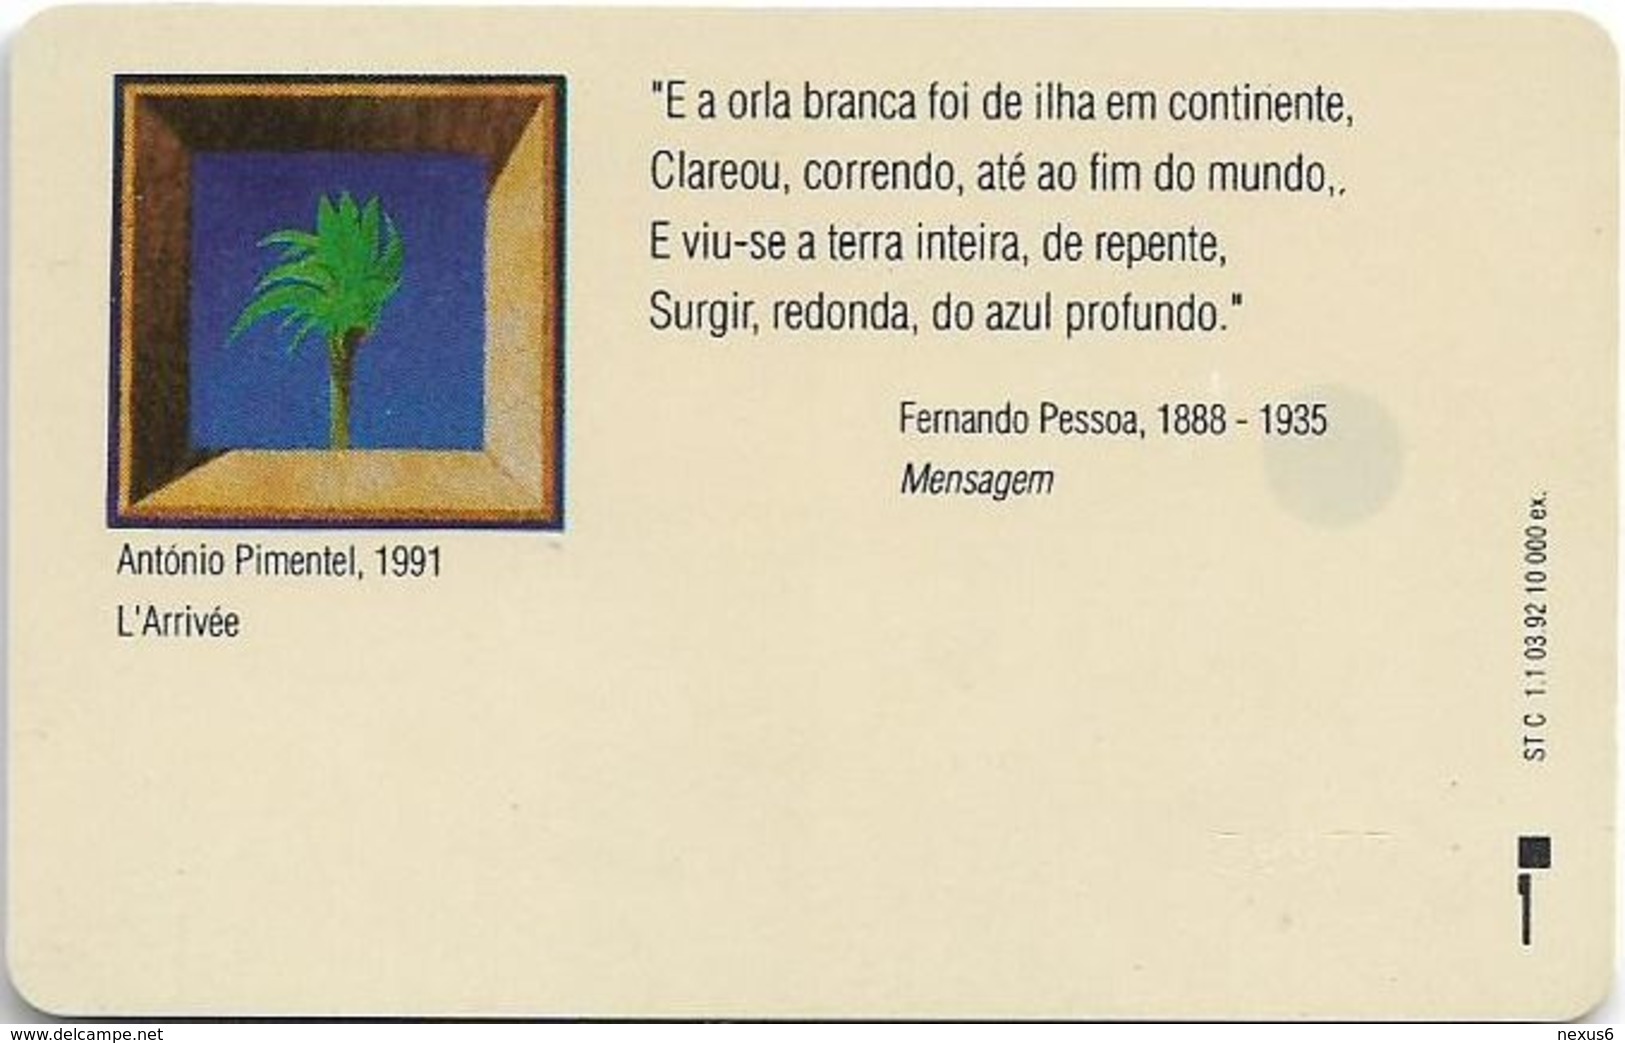 Portugal - TLP - Novos Dizeres, Descobrimentos - 120Units, SC5, 03.1992, 10.000ex, Used - Portugal